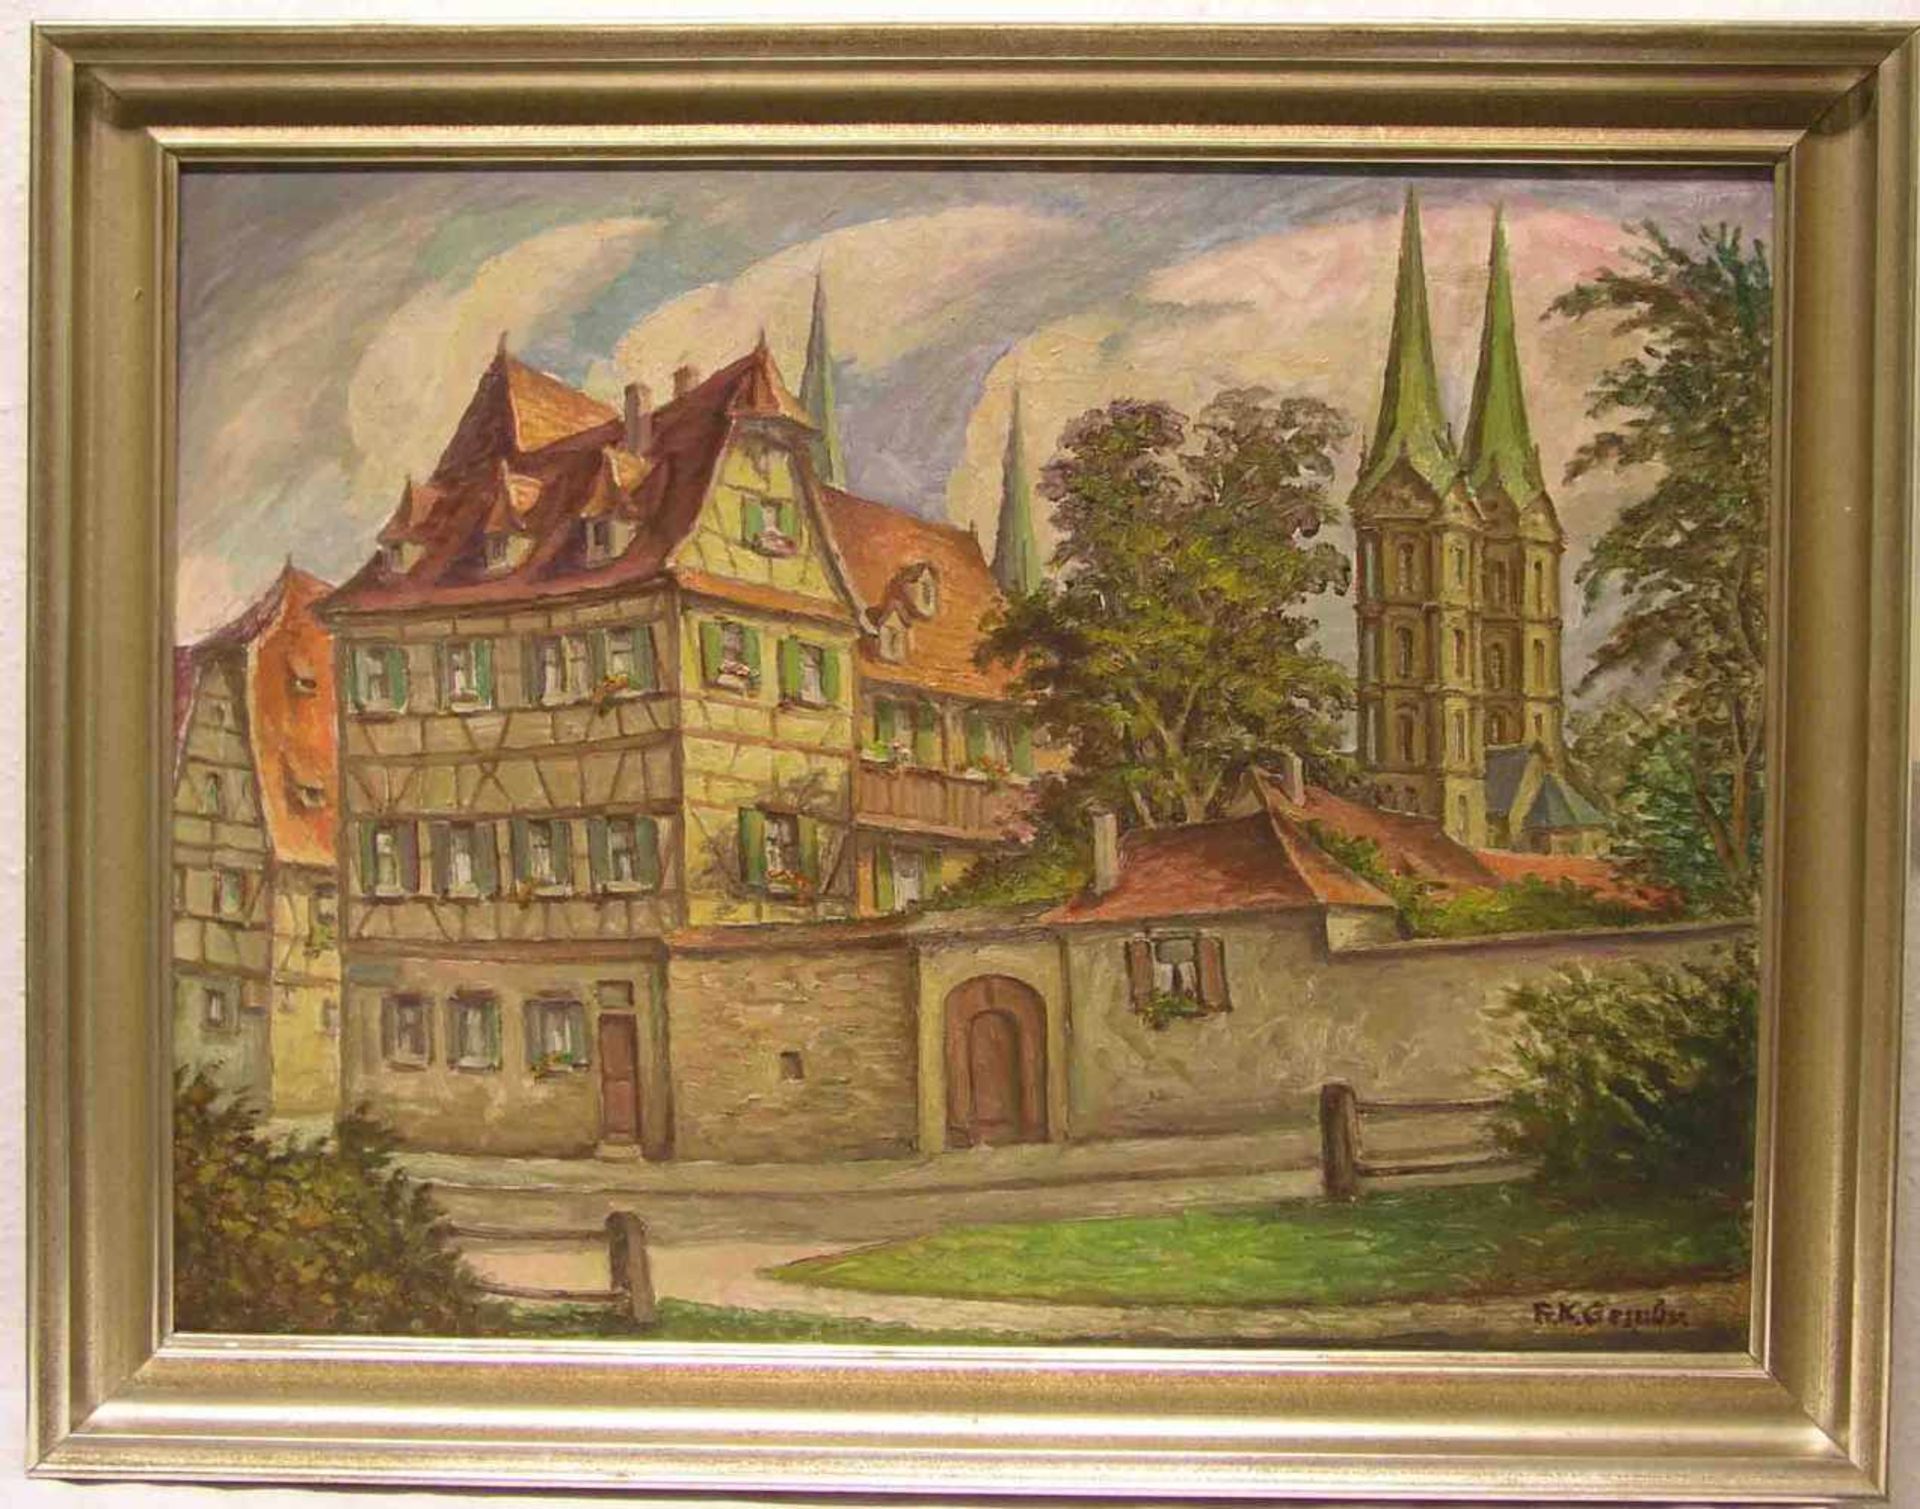 Gembs, Karl (1896 - 1963), Bamberger Maler: "Bamberg, am Domberg". Öl/Lwd., signiert,rückseitig